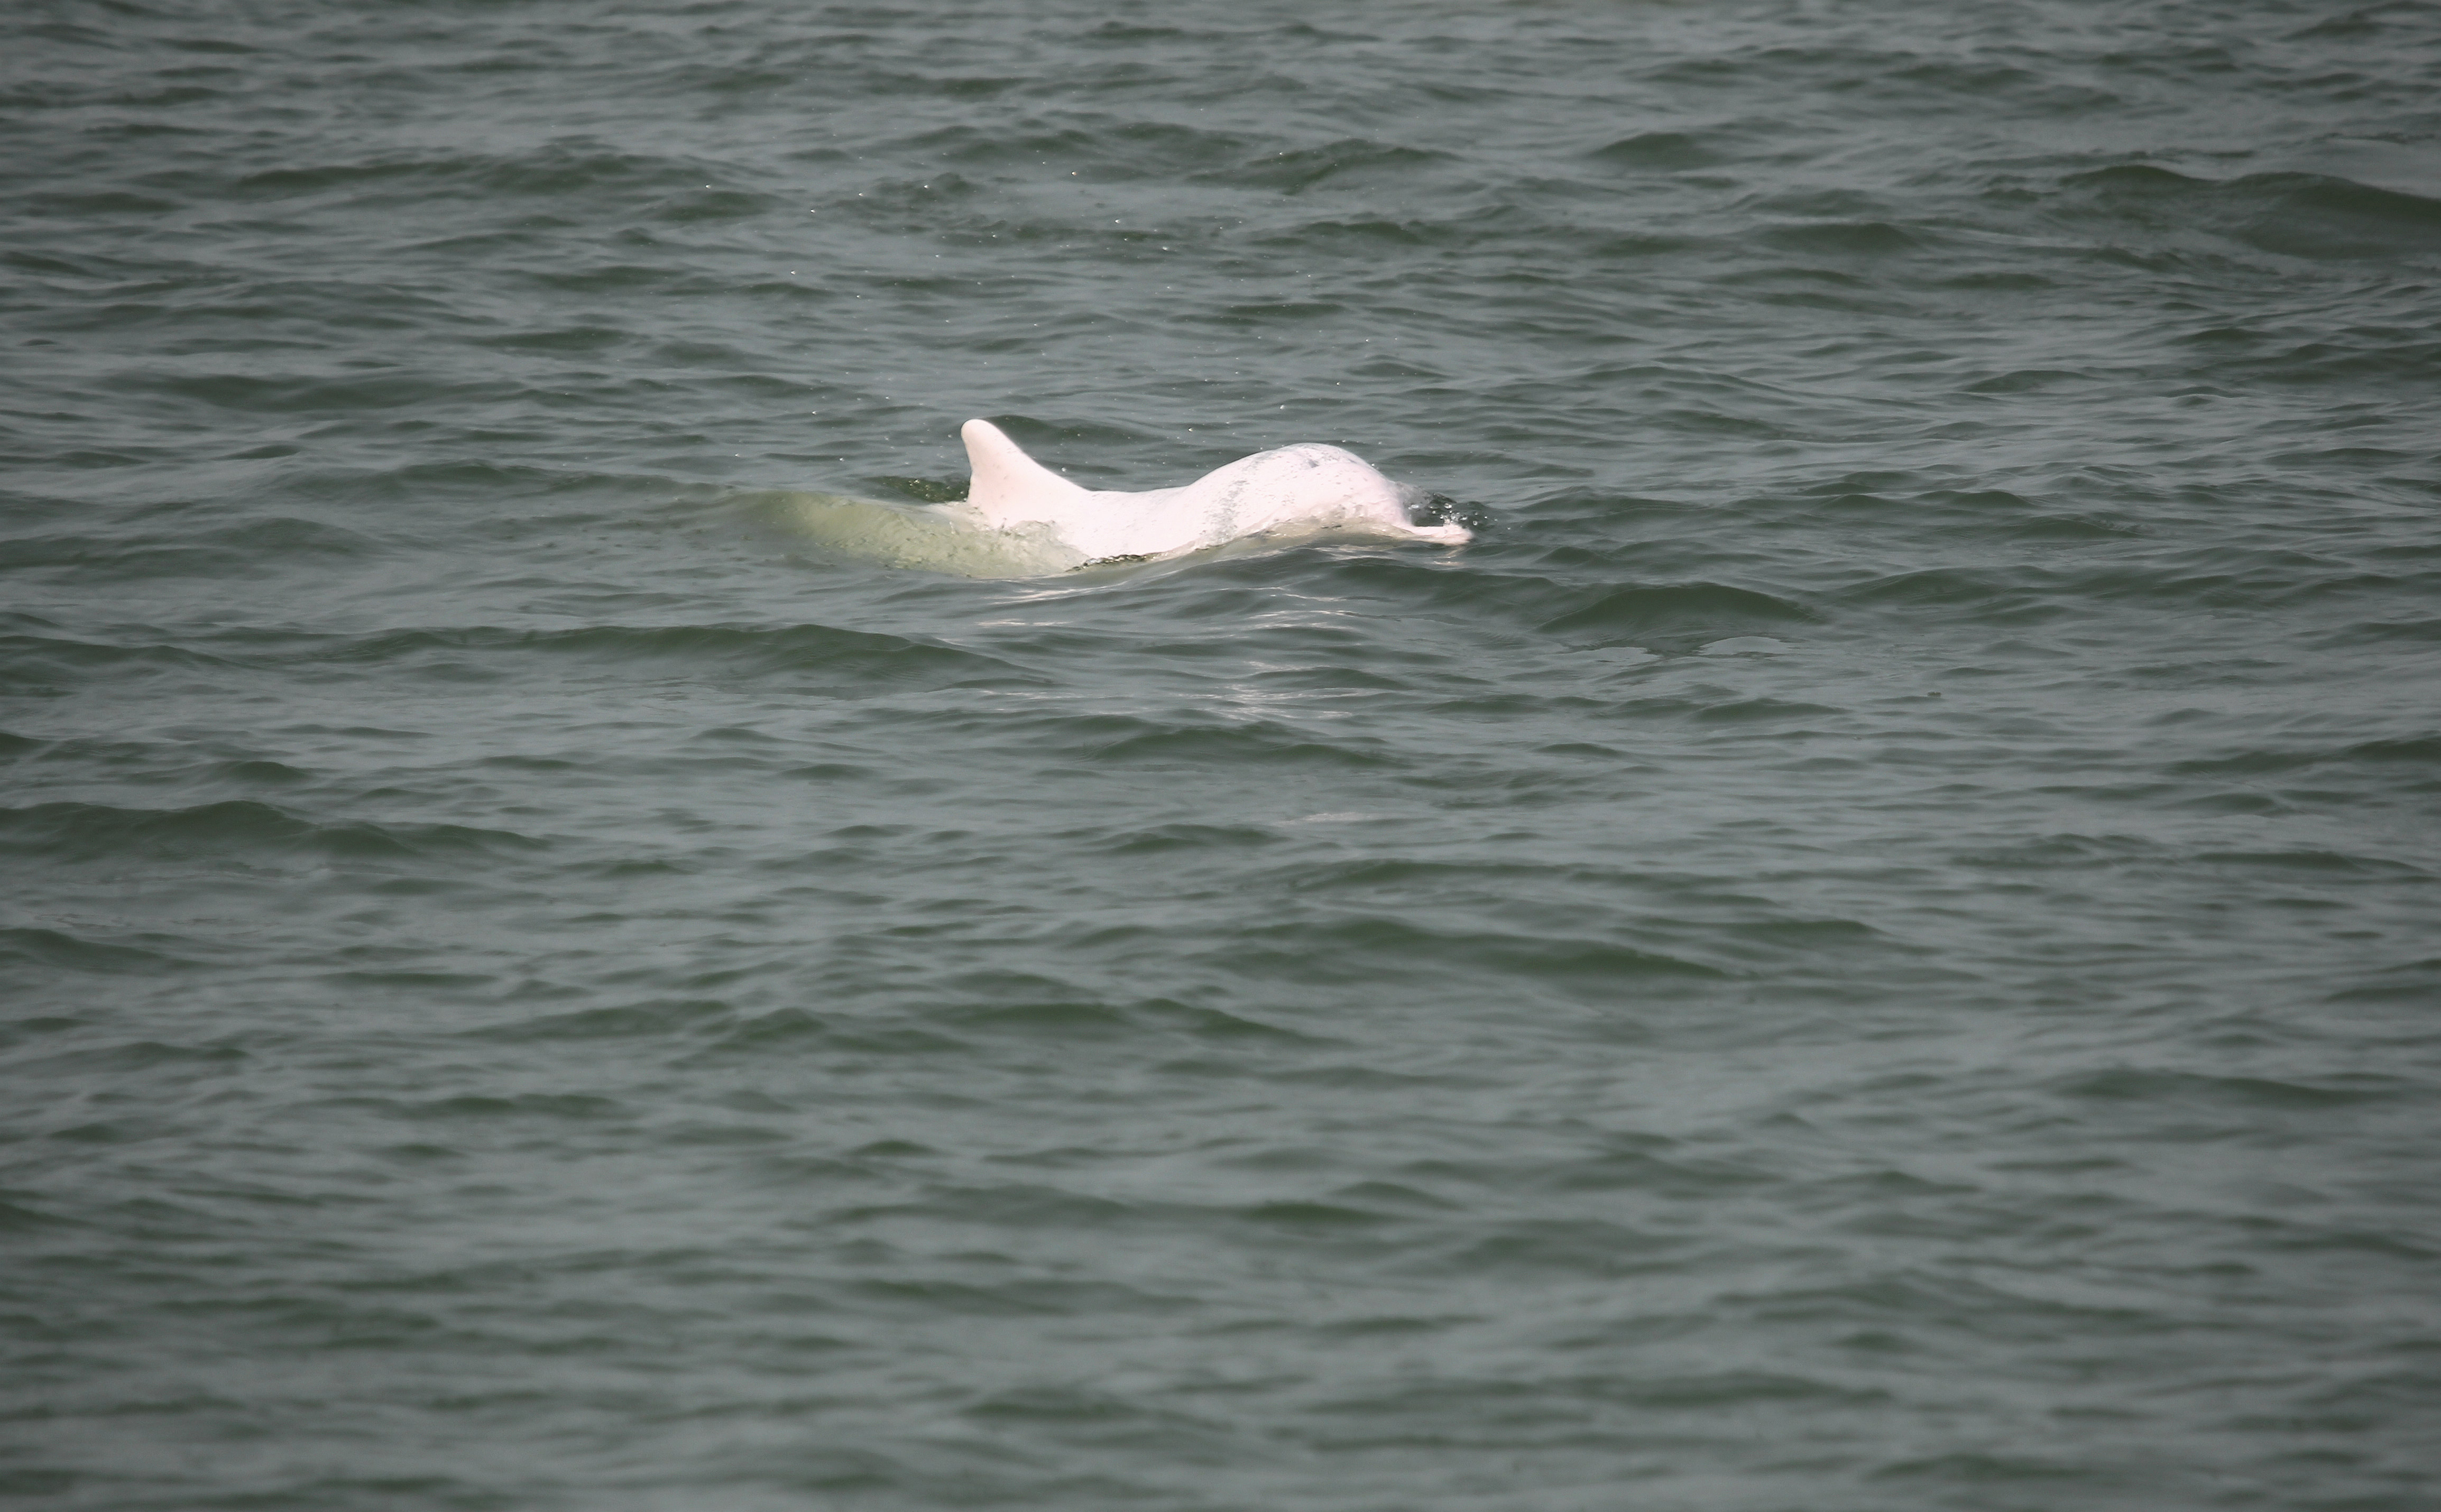 下一步，广东珠江口中华白海豚国家级自然保护区将通过构建信息化平台、加强科普宣教等活动，进一步提升保护力度。肖尤盛 摄